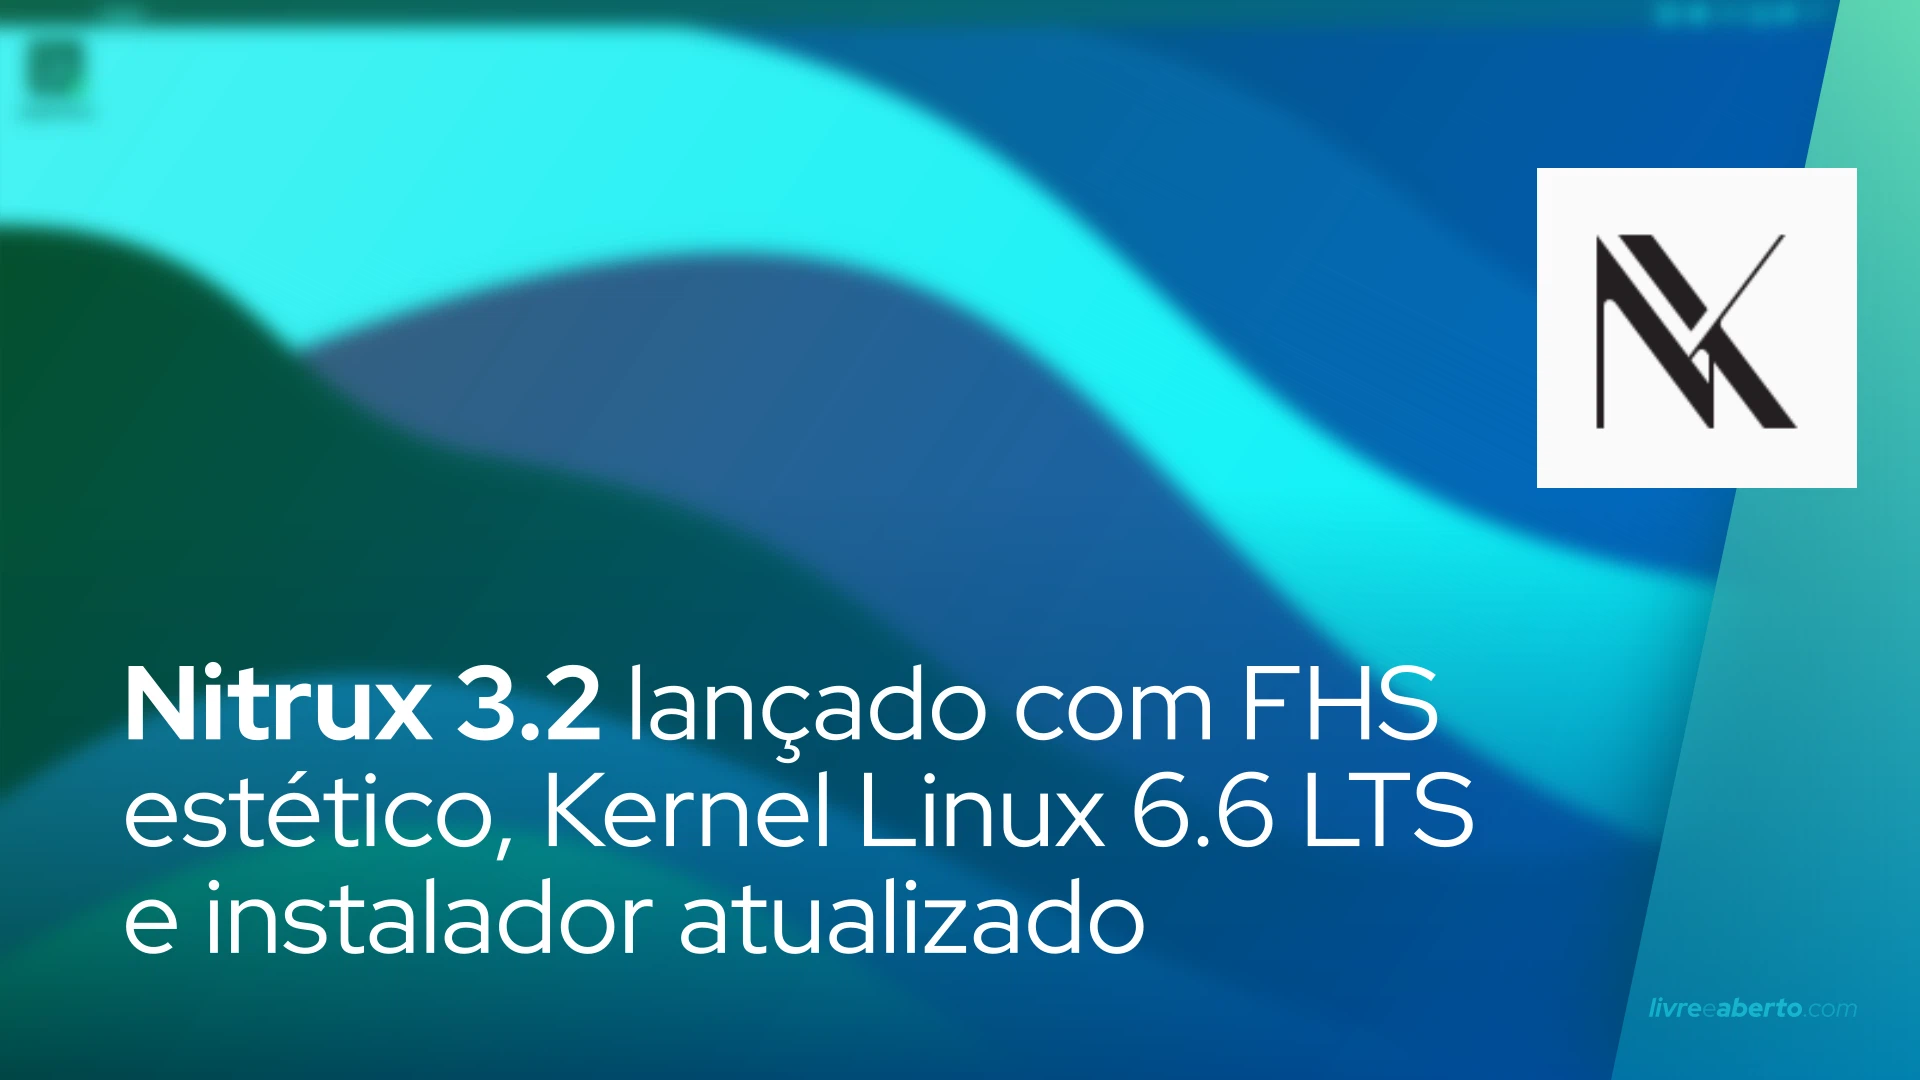 Nitrux 3.2 lançado com FHS estético, Kernel Linux 6.6 LTS e instalador atualizado